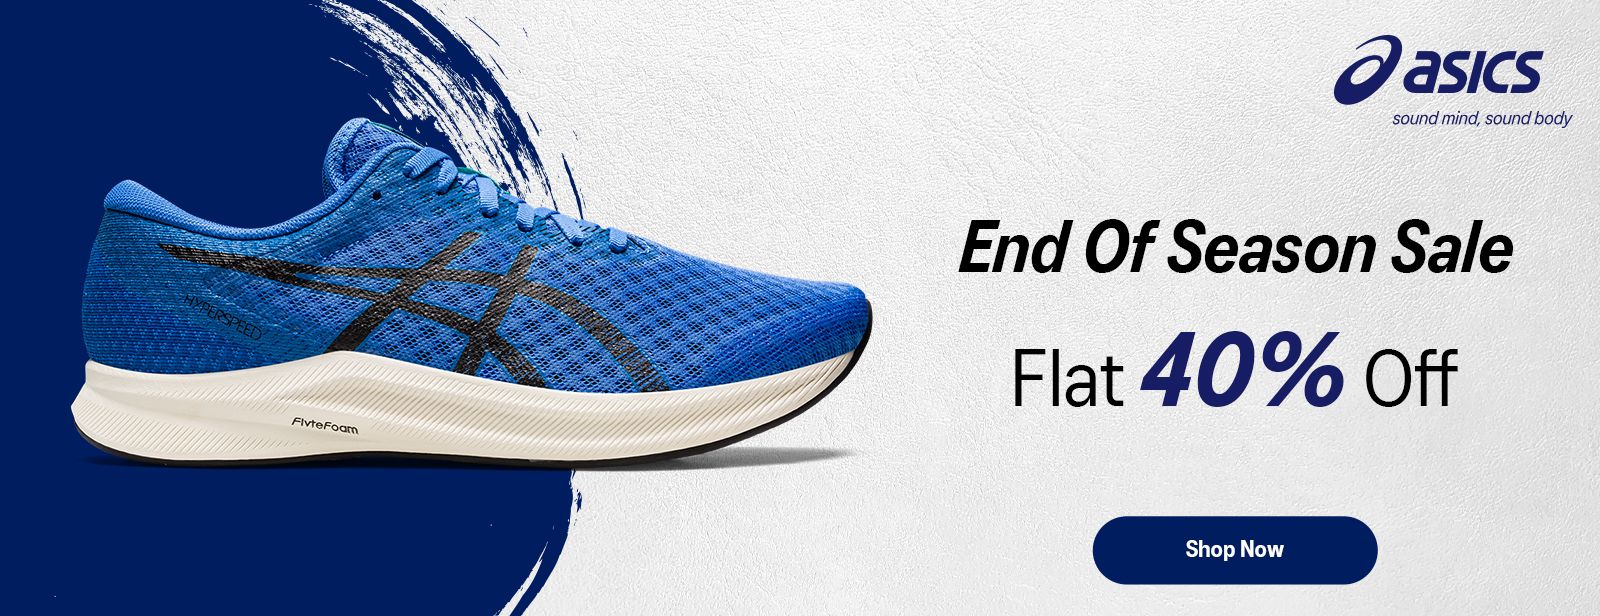 Inconsistente Contribución Escarpado ASICS India | Official Running Shoes & Clothing